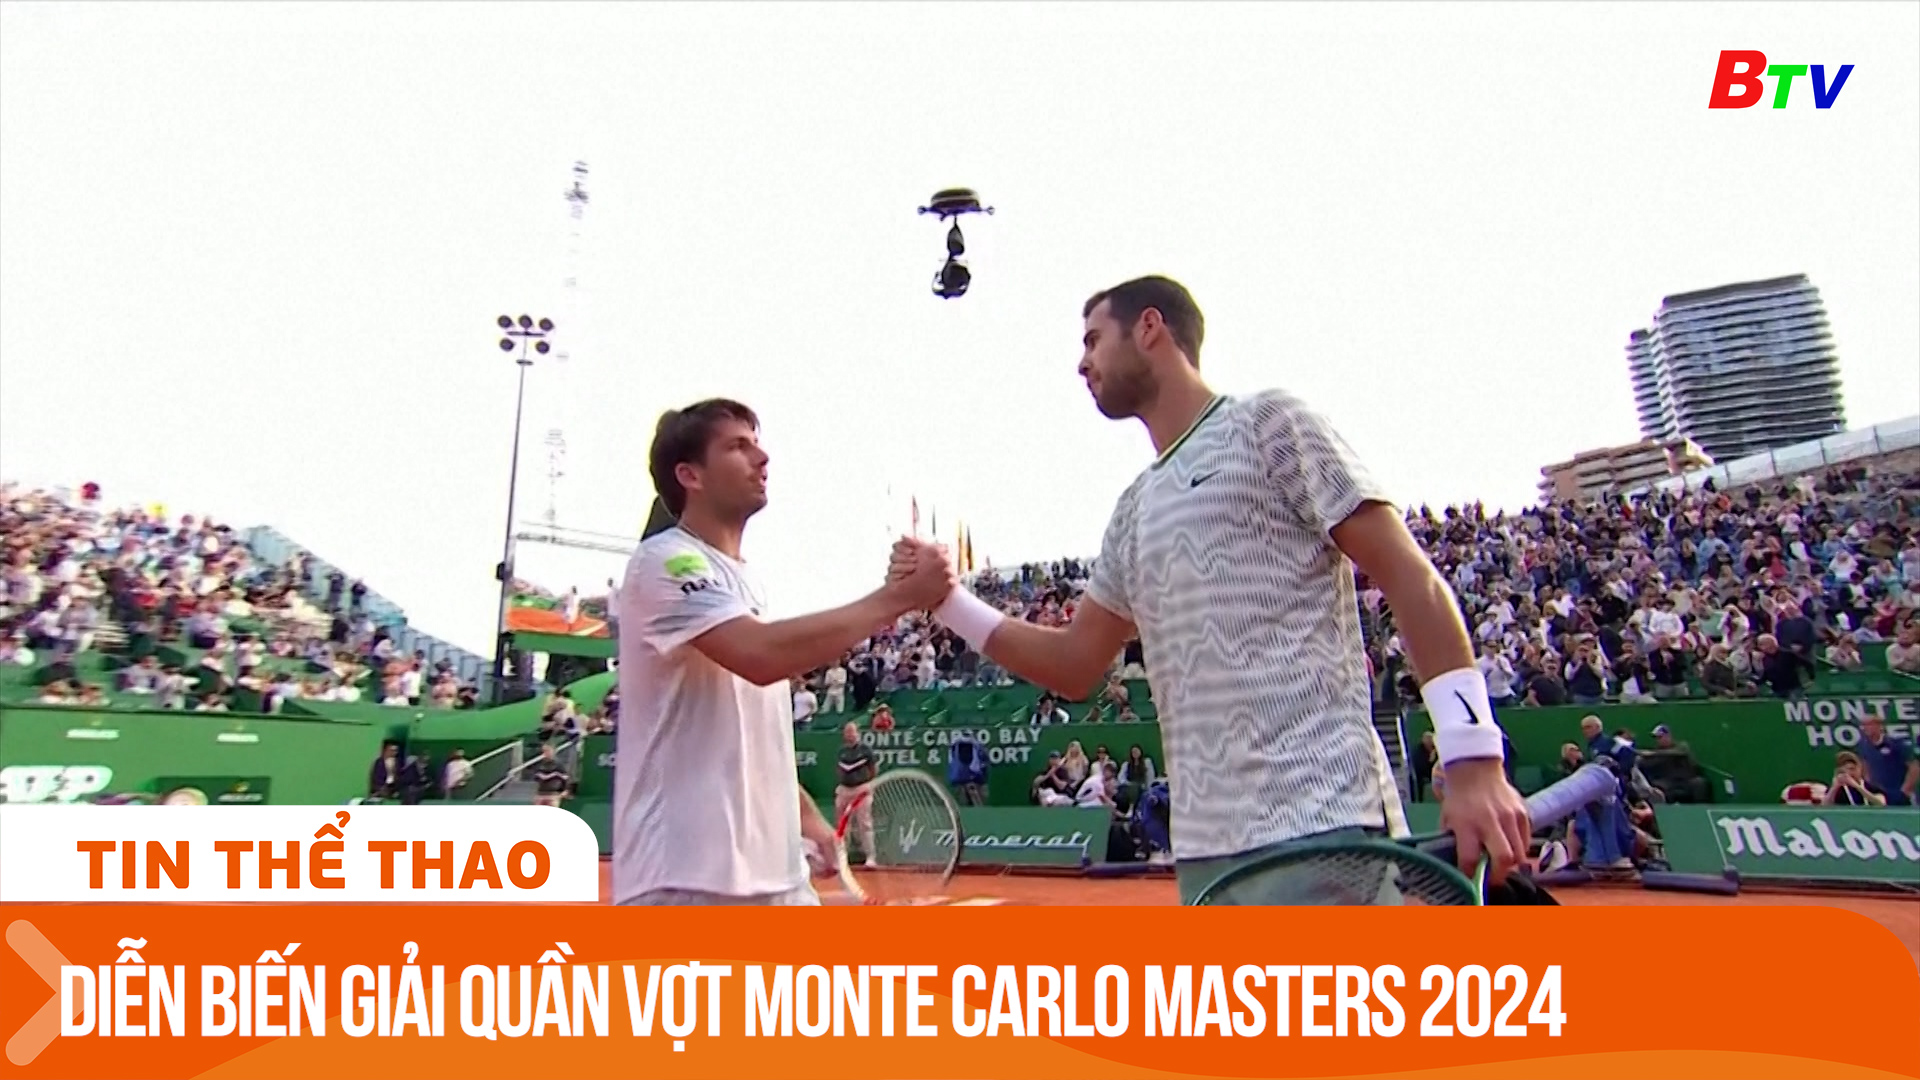 Diễn biến vòng 1 giải quần vợt Monte Carlo Masters 2024 | Tin Thể thao 24h	